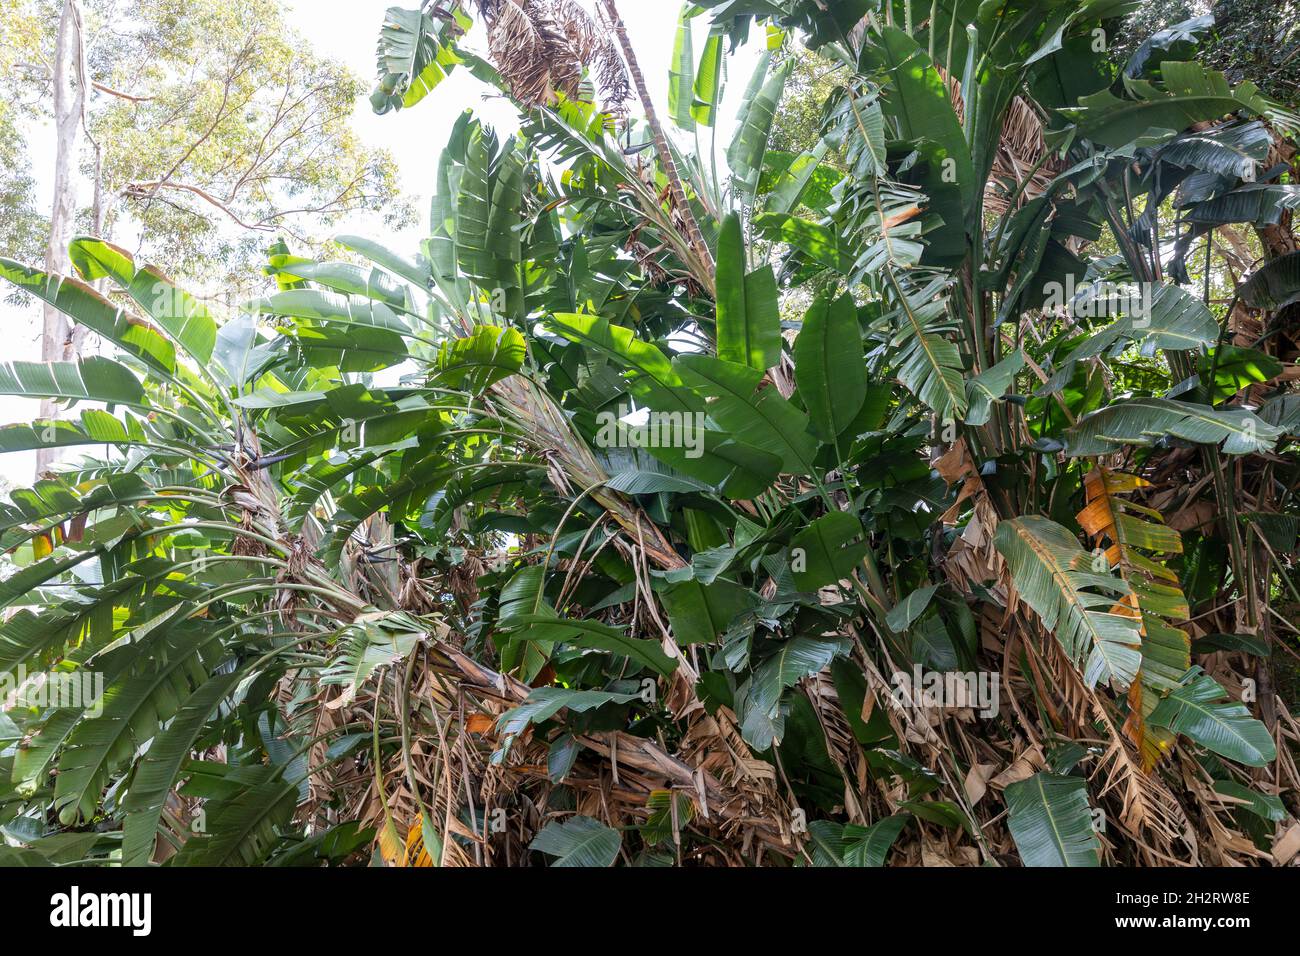 Riesenvögel des Paradieses oder wilde Bananenpflanze, strelitzia nicolai, in einem Sydney Garten, NSW, Australien an einem Frühlingstag Stockfoto